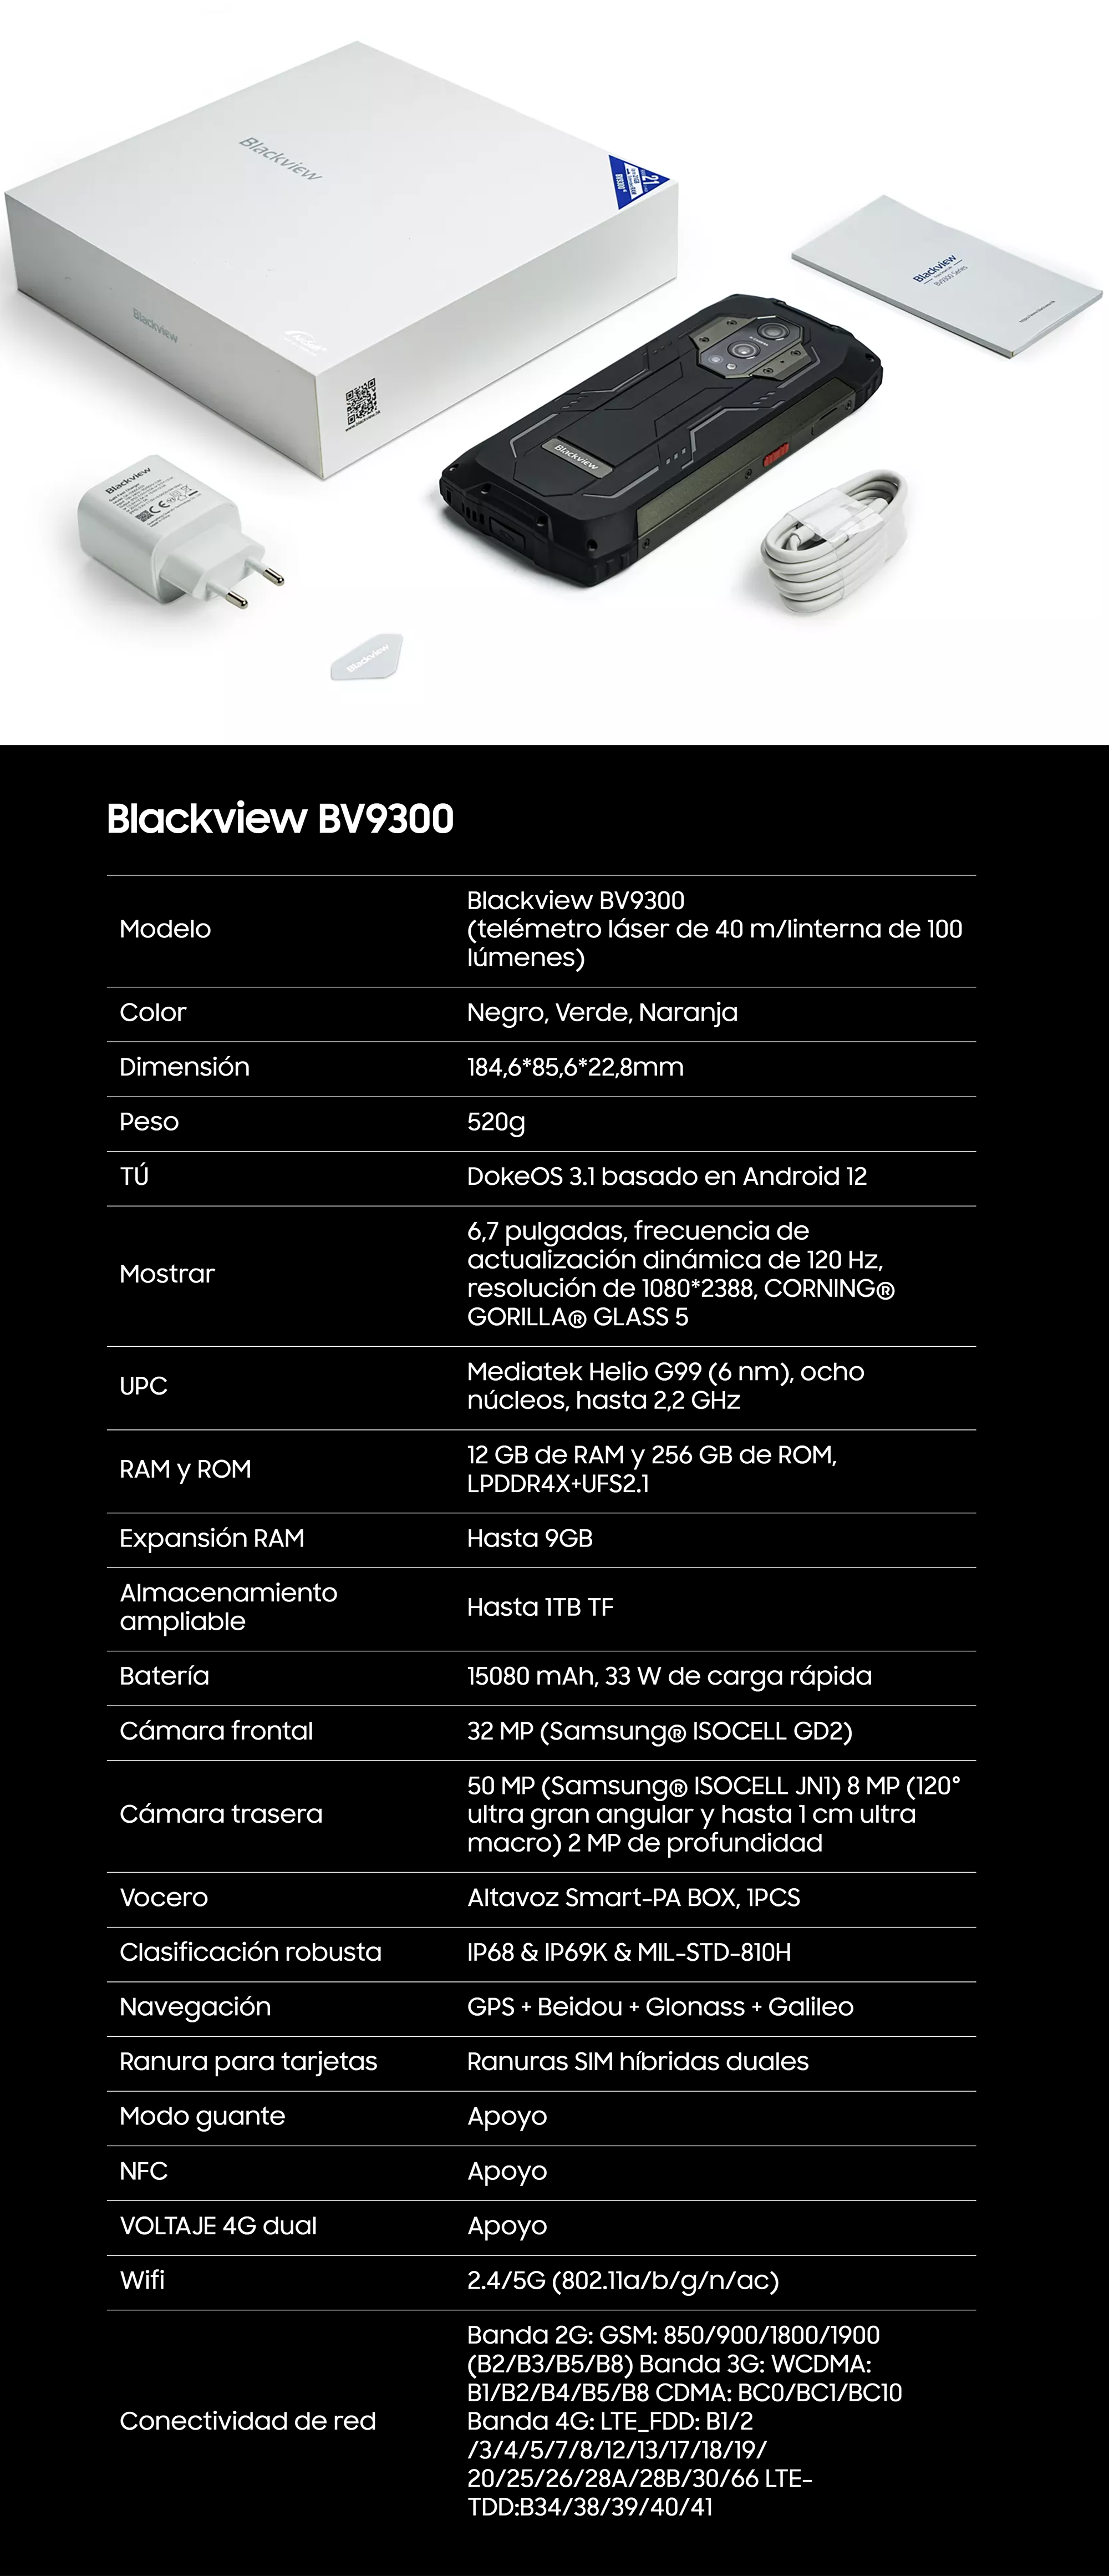 Blackview BV9300 Pro, análisis y opinión: review de sus